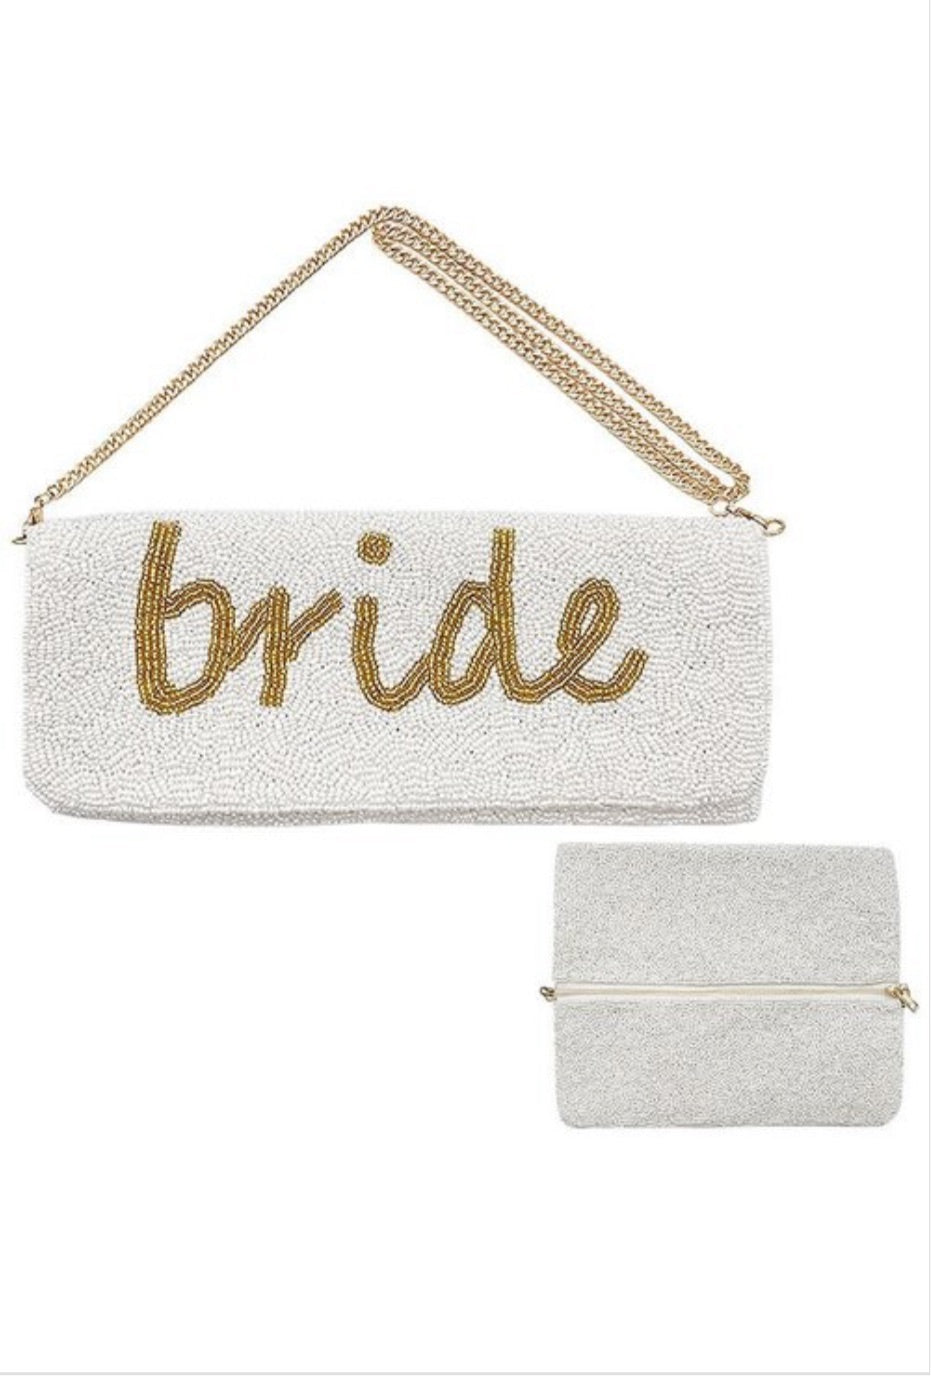 Bride purse